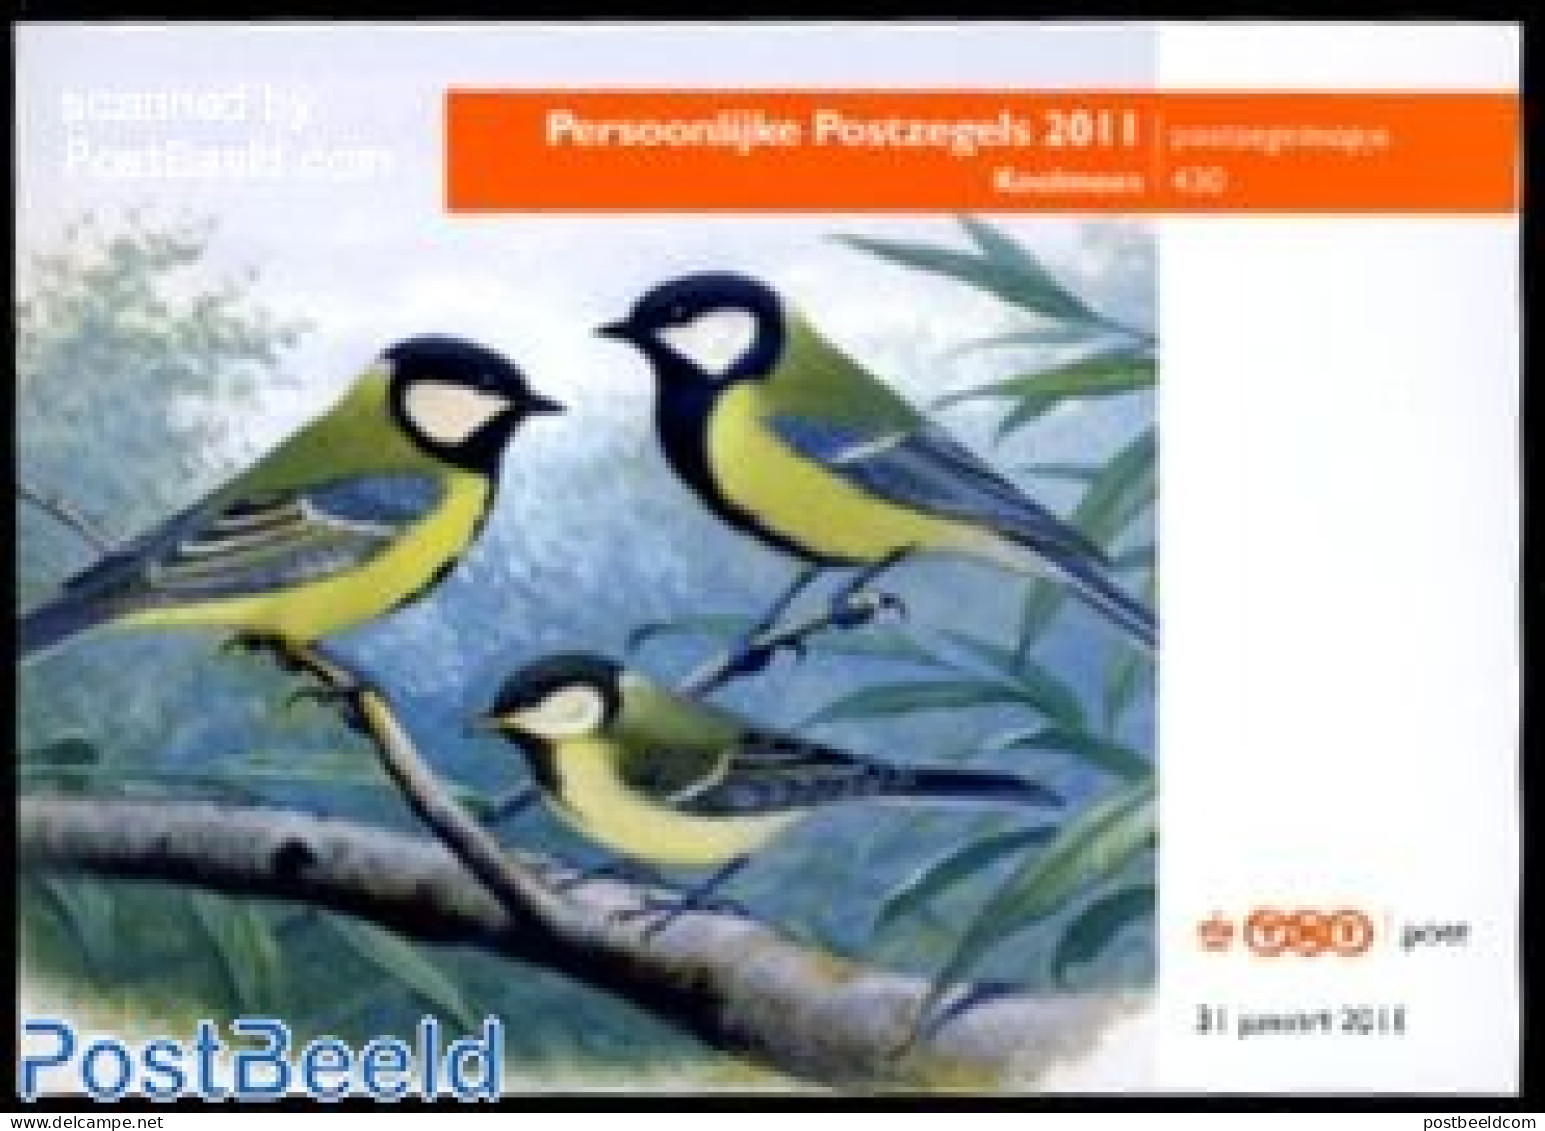 Netherlands 2011 Presentation Pack 430, Birds, Mint NH, Nature - Birds - Ongebruikt